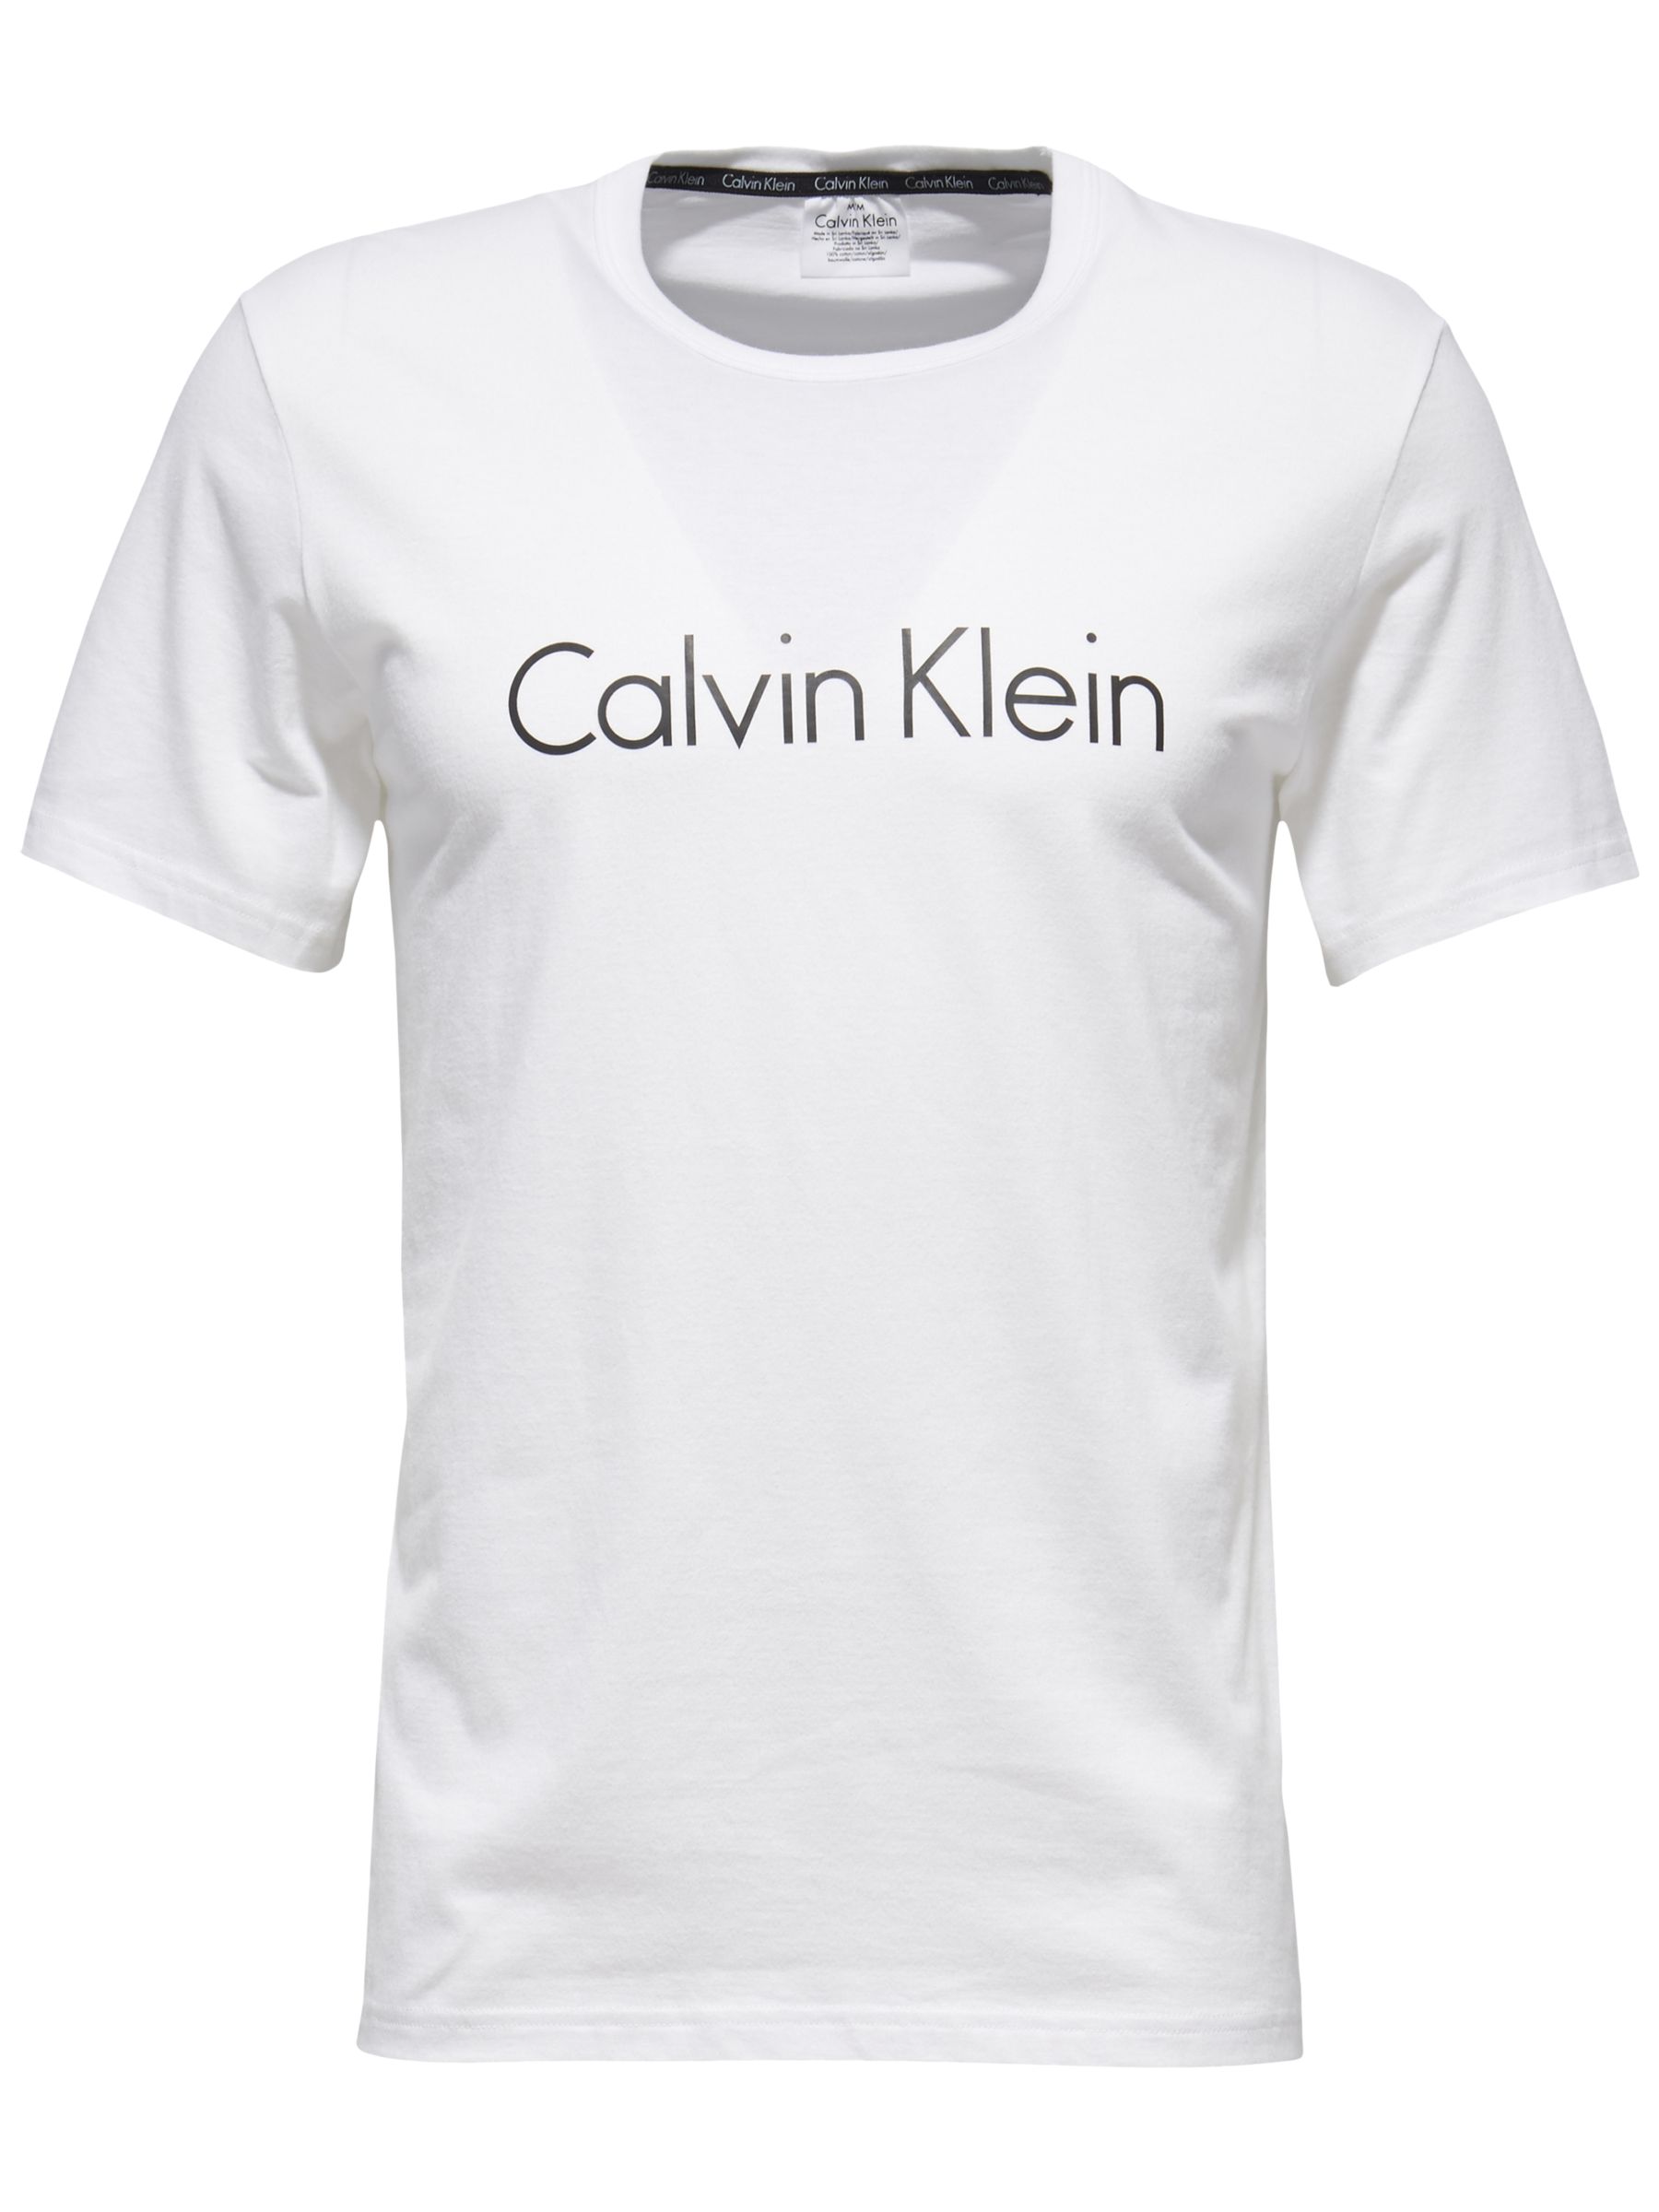 calvin klein sleepwear t shirt